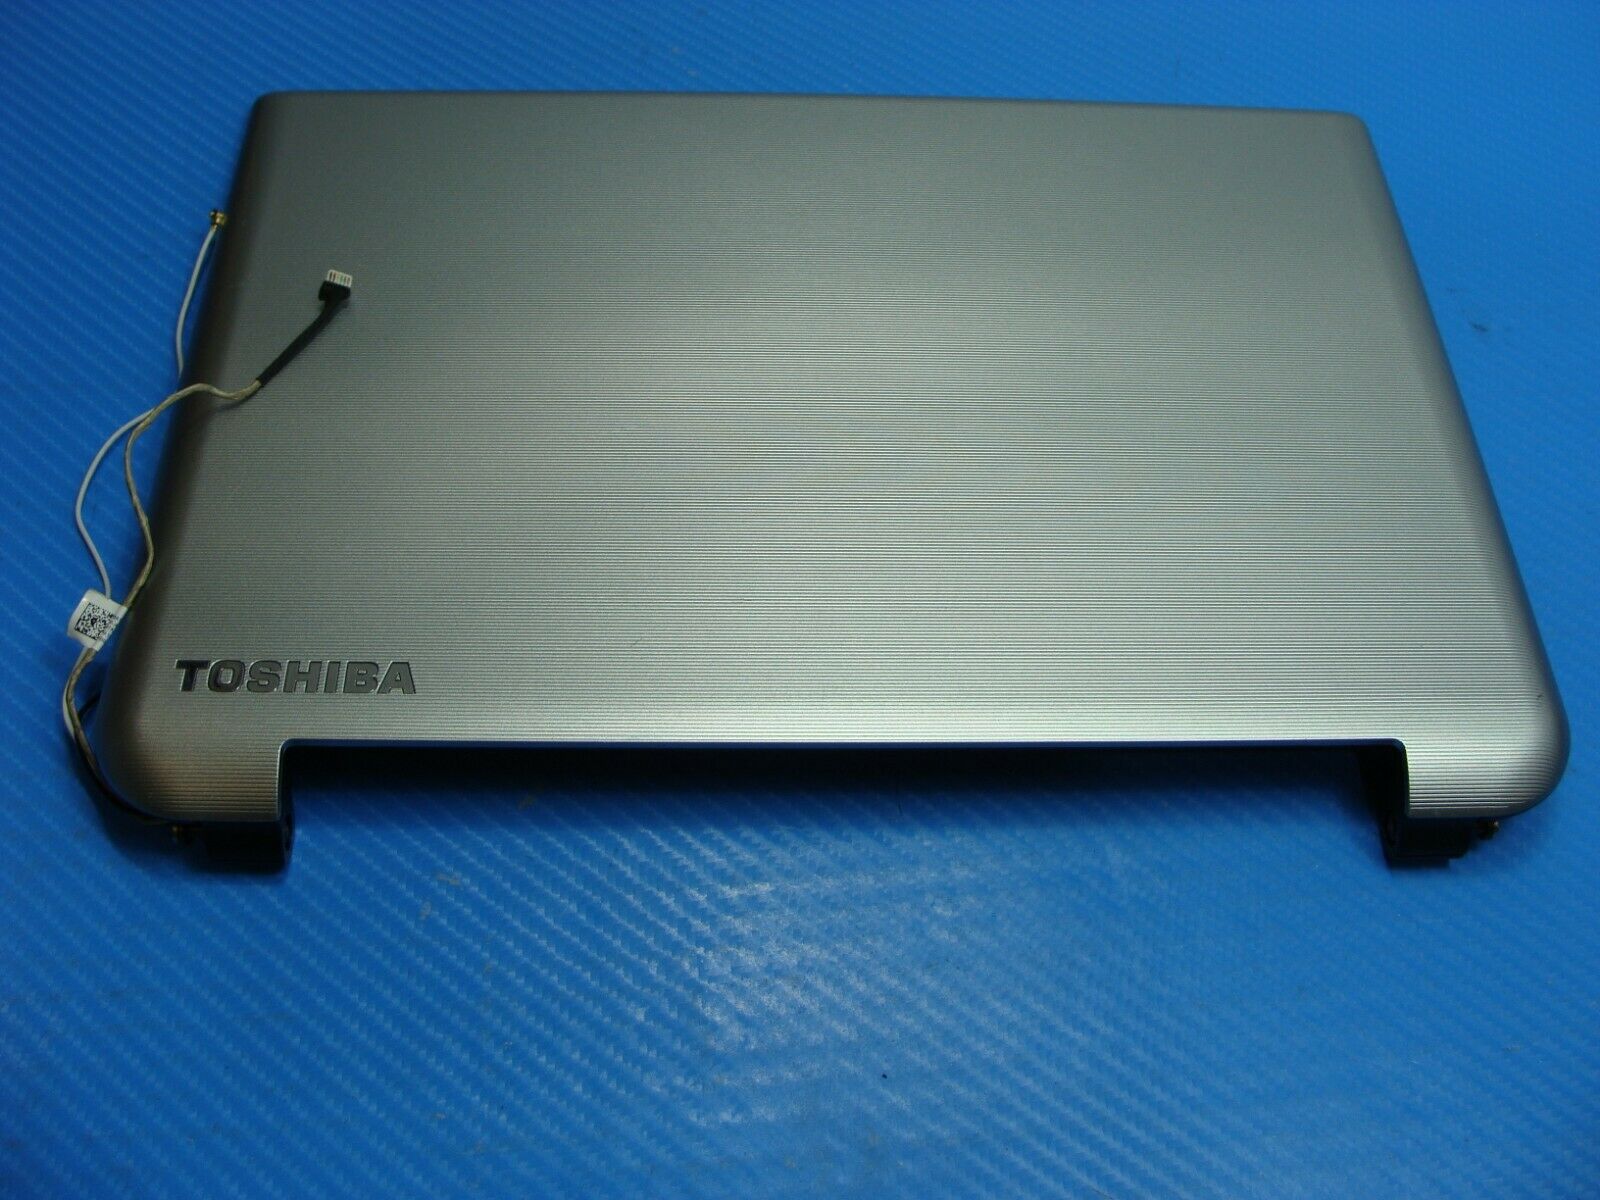 Toshiba Satellite 11.6